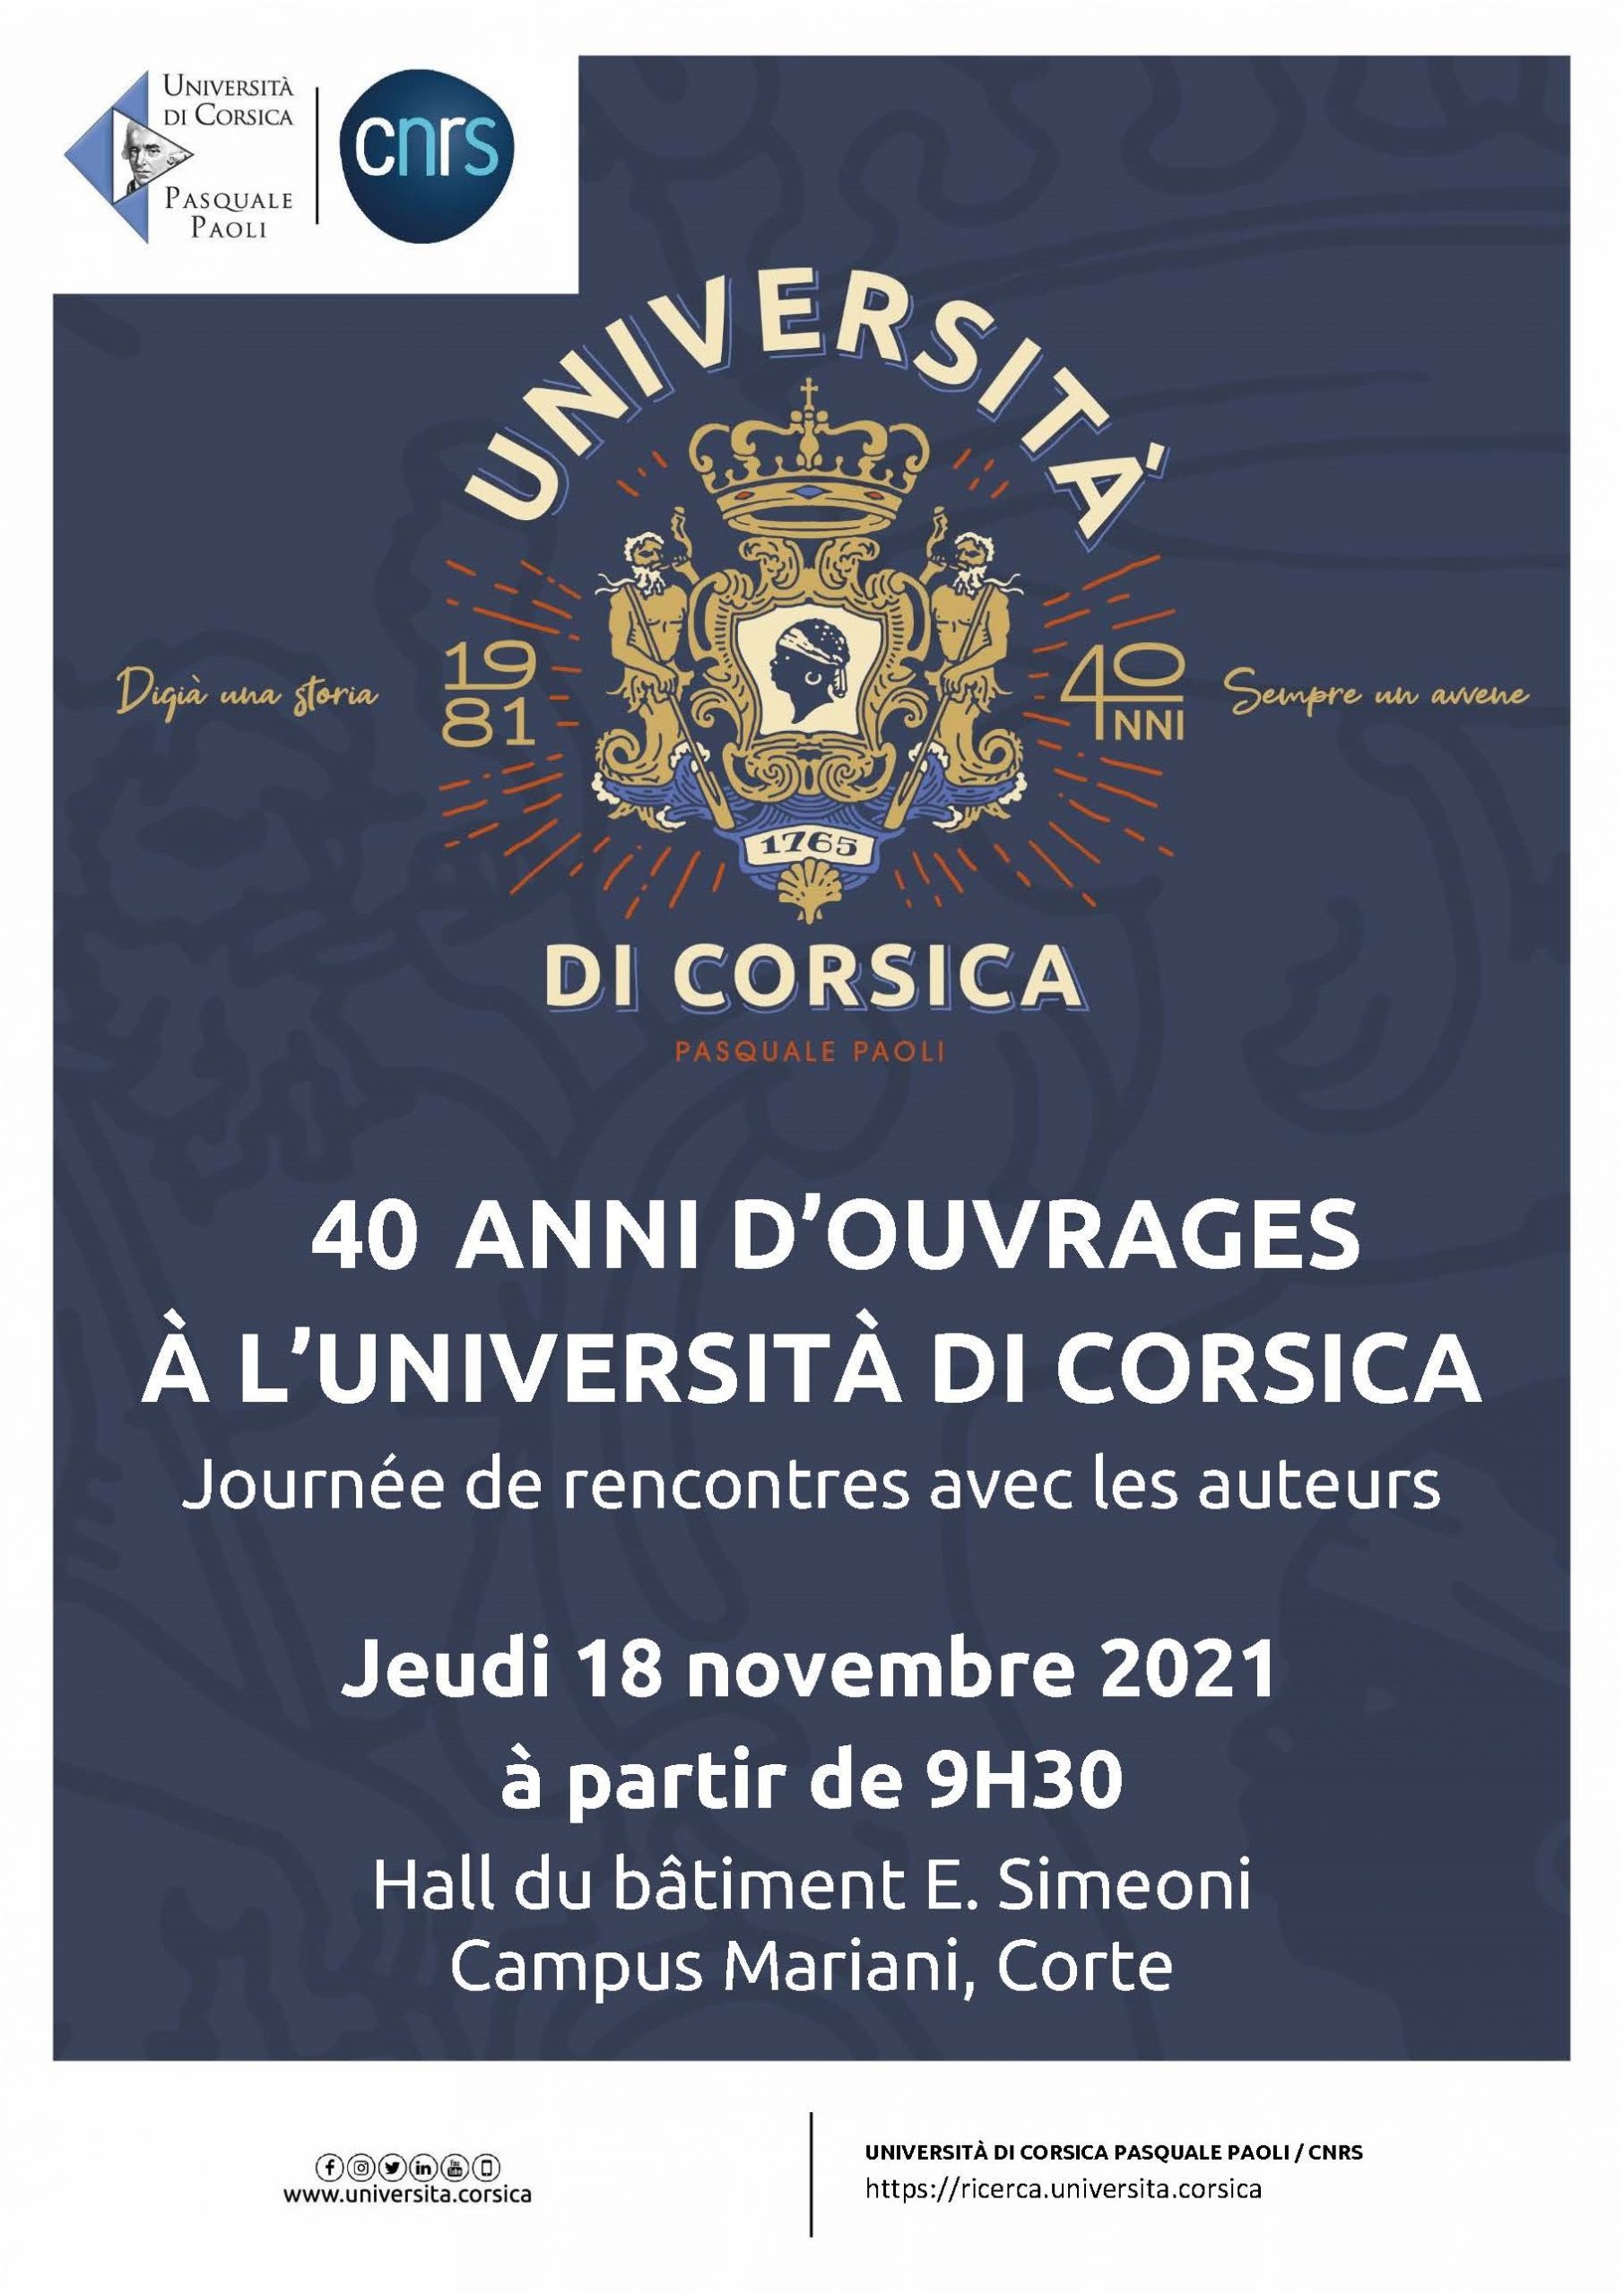 Journée de rencontres « 40 ans d’ouvrages scientifiques à l’Università di Corsica »